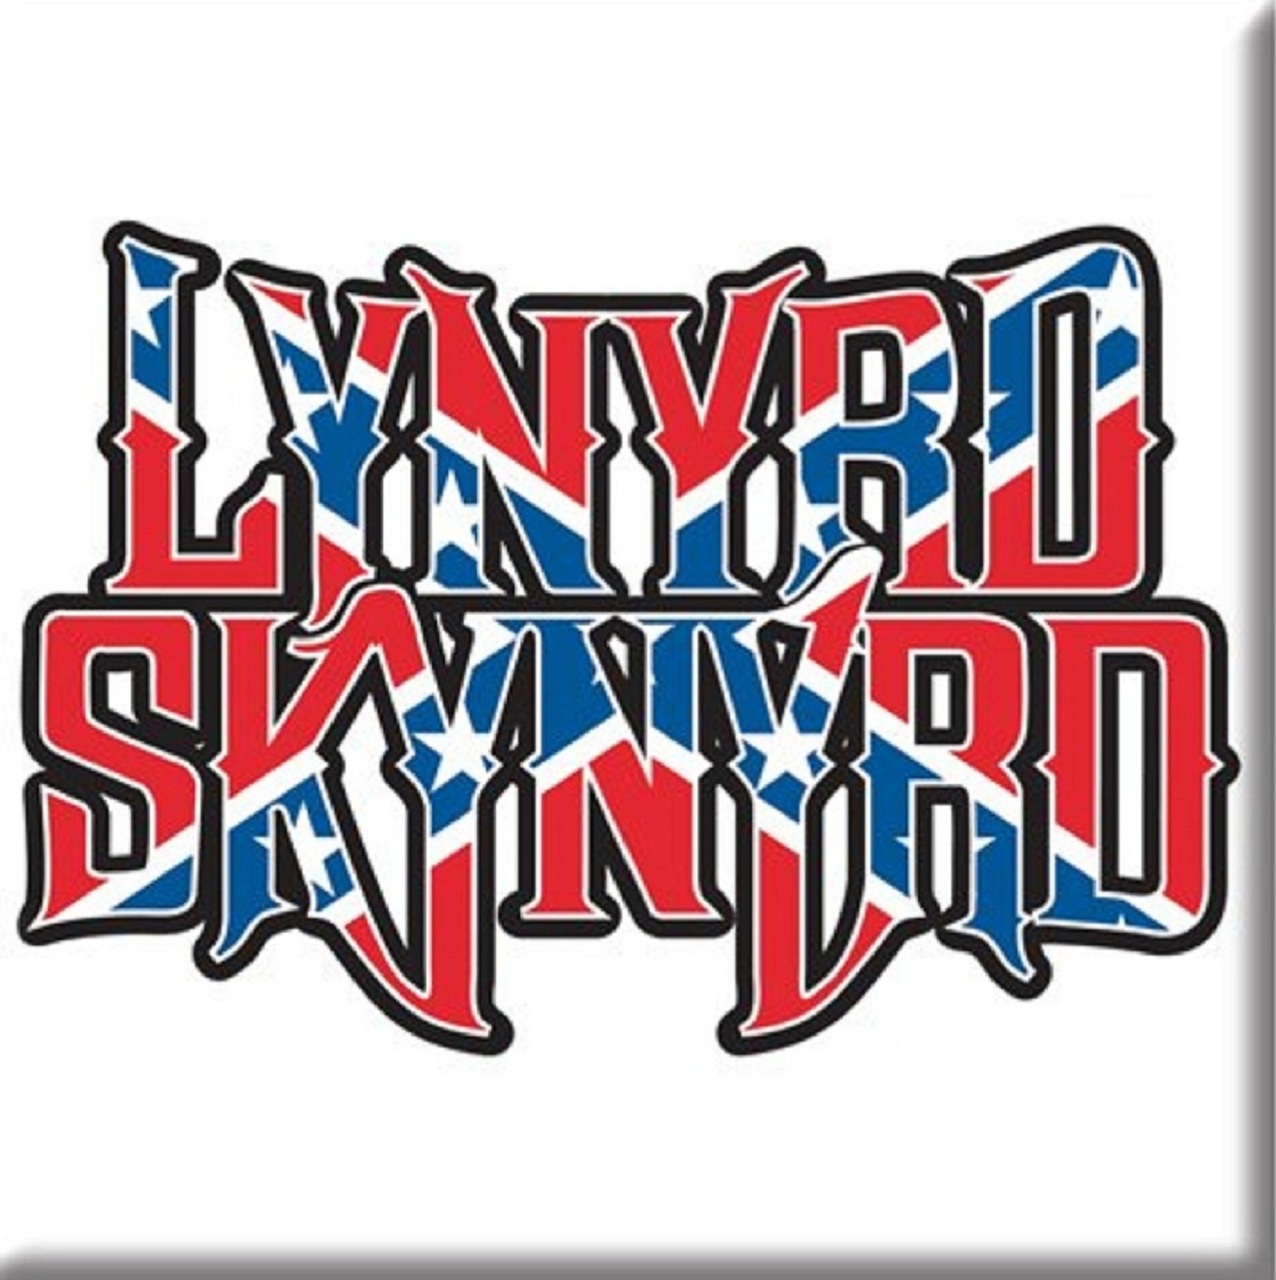 Lynyrd Skynyrd Logo 76mm x 76mm Fridge Magnet.